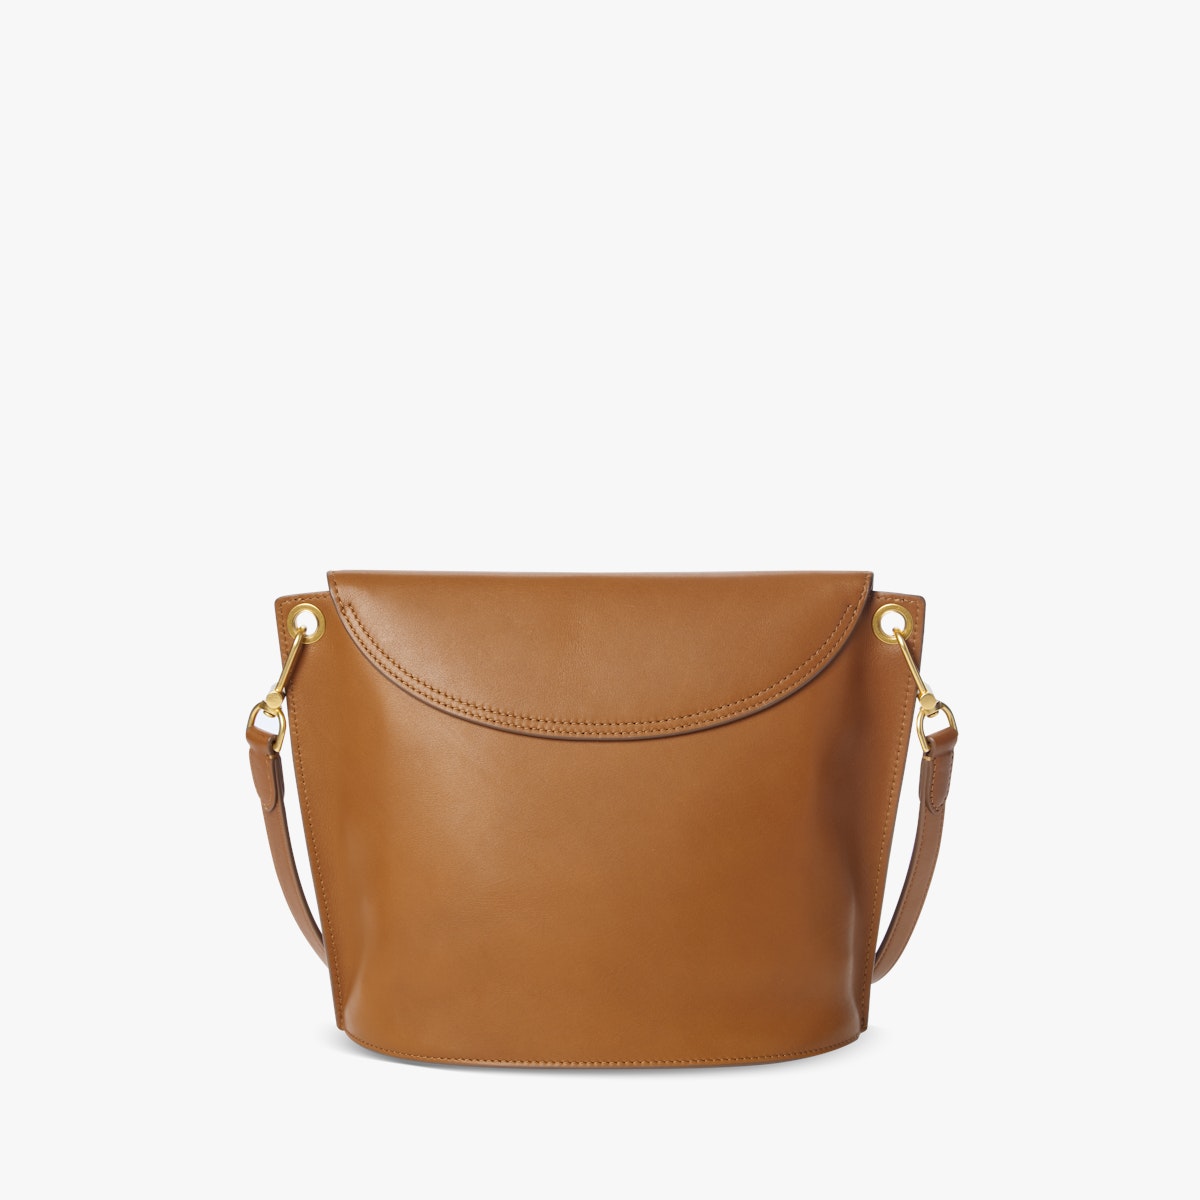 Leather Adjustable Shoulder Chain PATTINA Saddle Bag